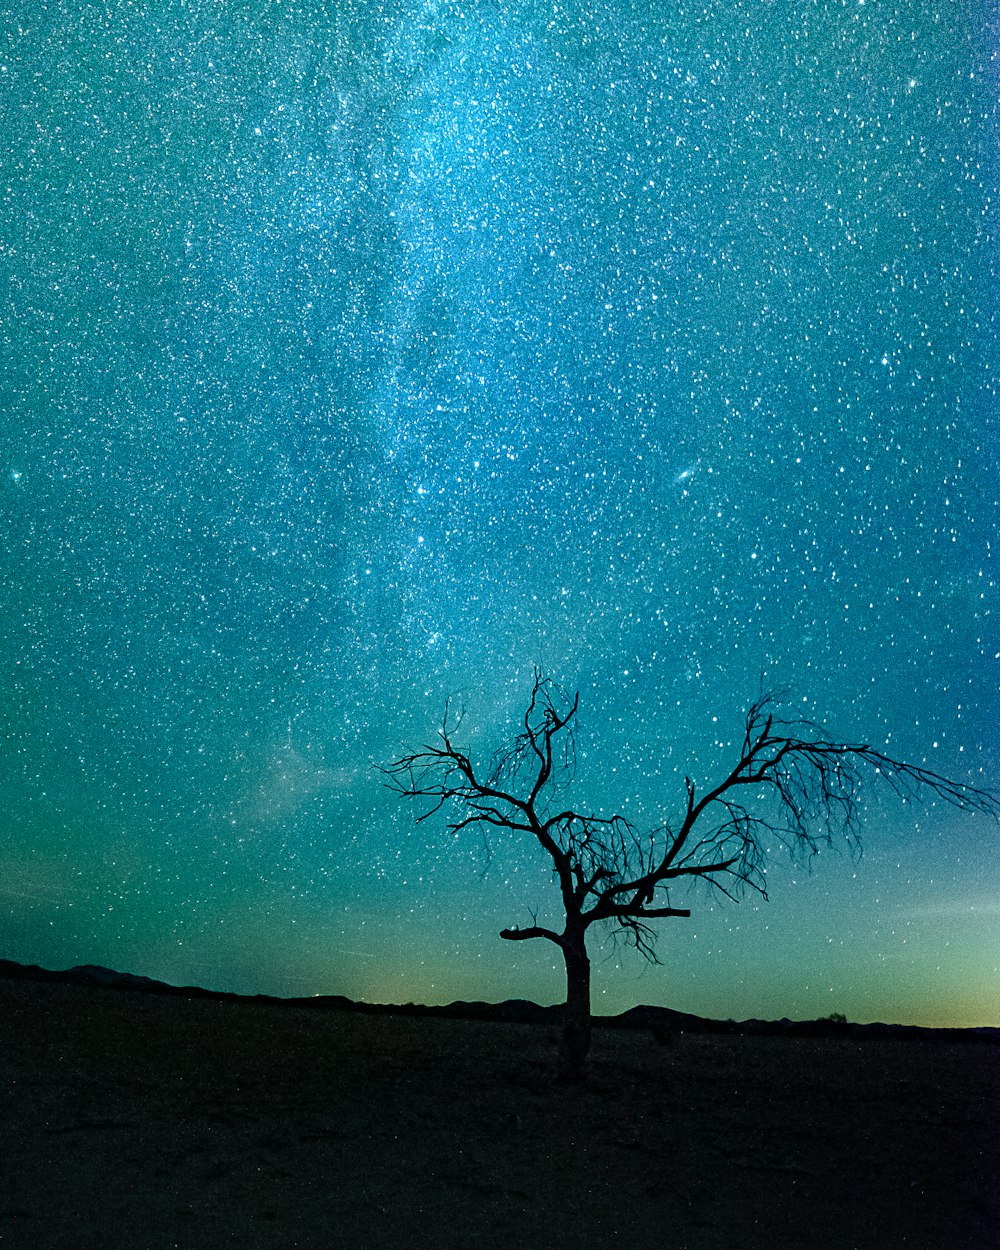 arbre nu sous la nuit étoilée